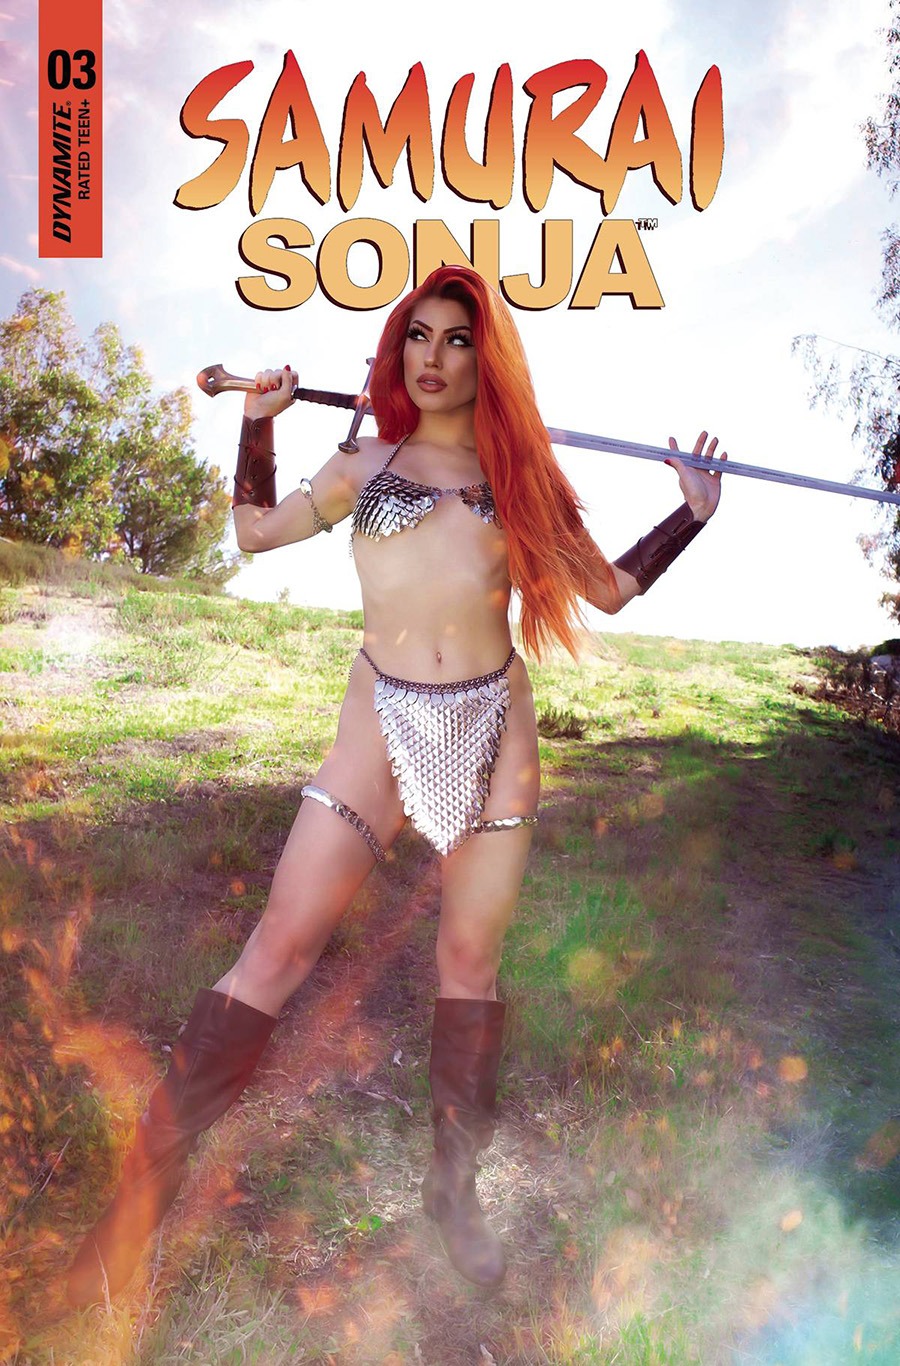 Samurai Sonja #3 Cover E Variant Rachel Hollon Cosplay Photo Cover